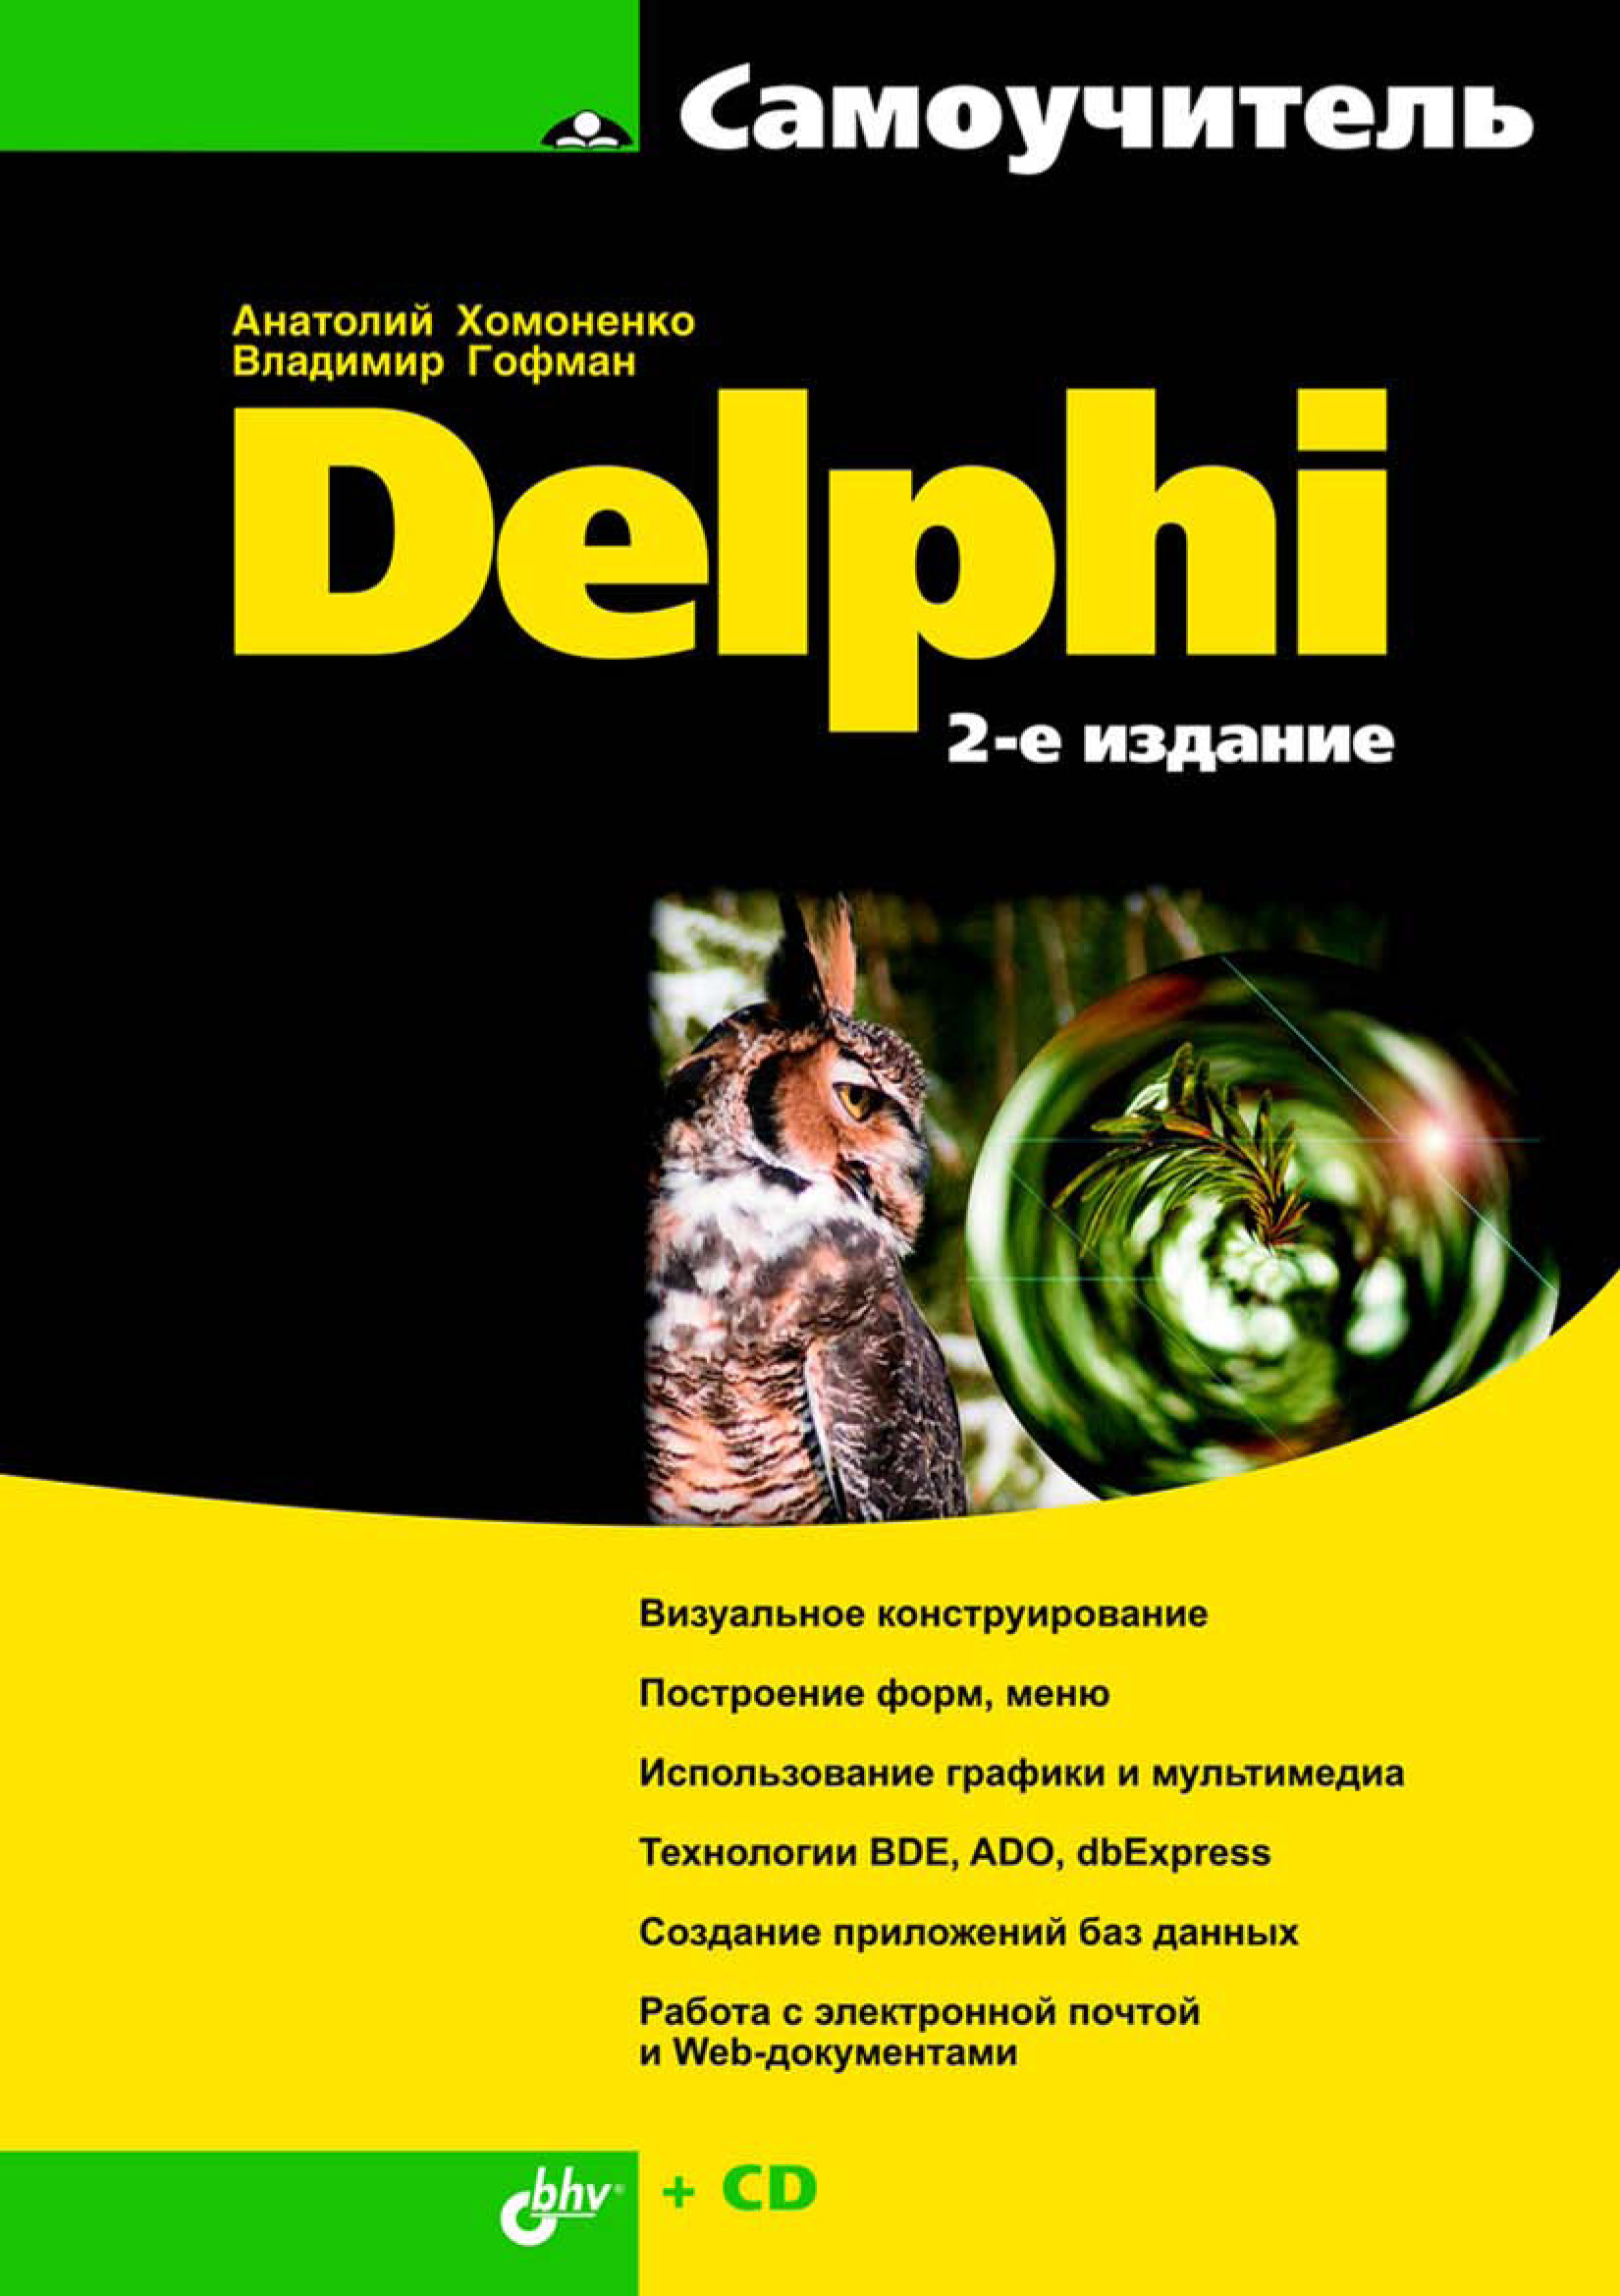 Книга Самоучитель (BHV) Самоучитель Delphi созданная Владимир Гофман, Анатолий Хомоненко может относится к жанру программирование. Стоимость электронной книги Самоучитель Delphi с идентификатором 6661635 составляет 183.00 руб.